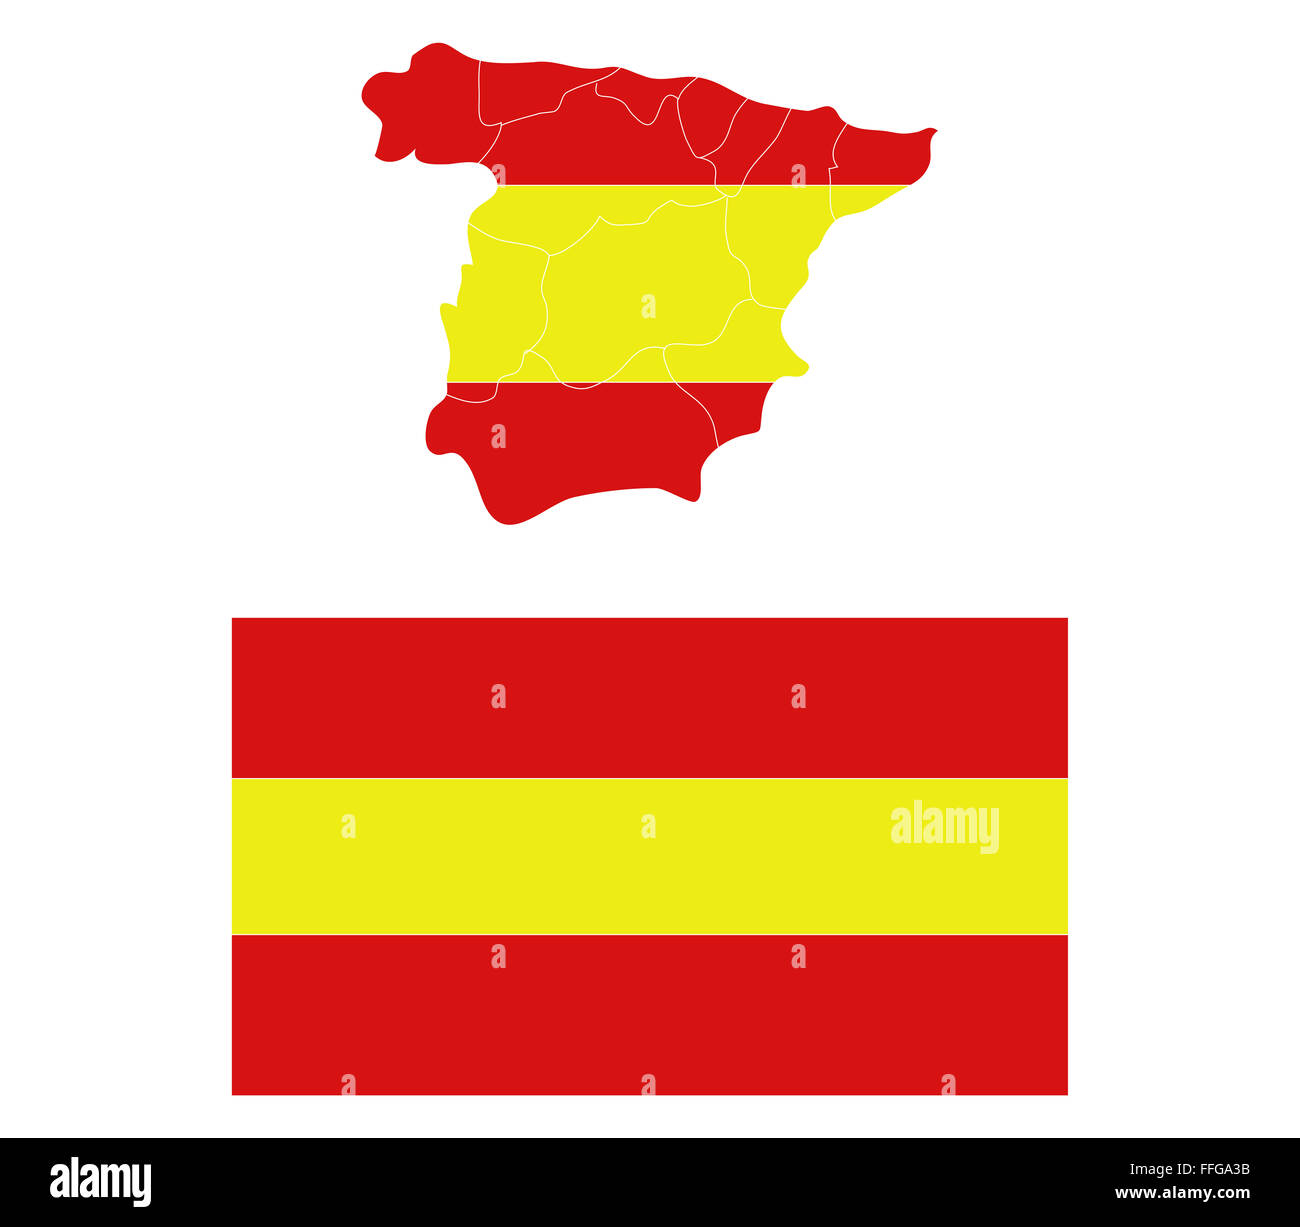 Mapa De España Con Regiones Fotografía De Stock Alamy 9841